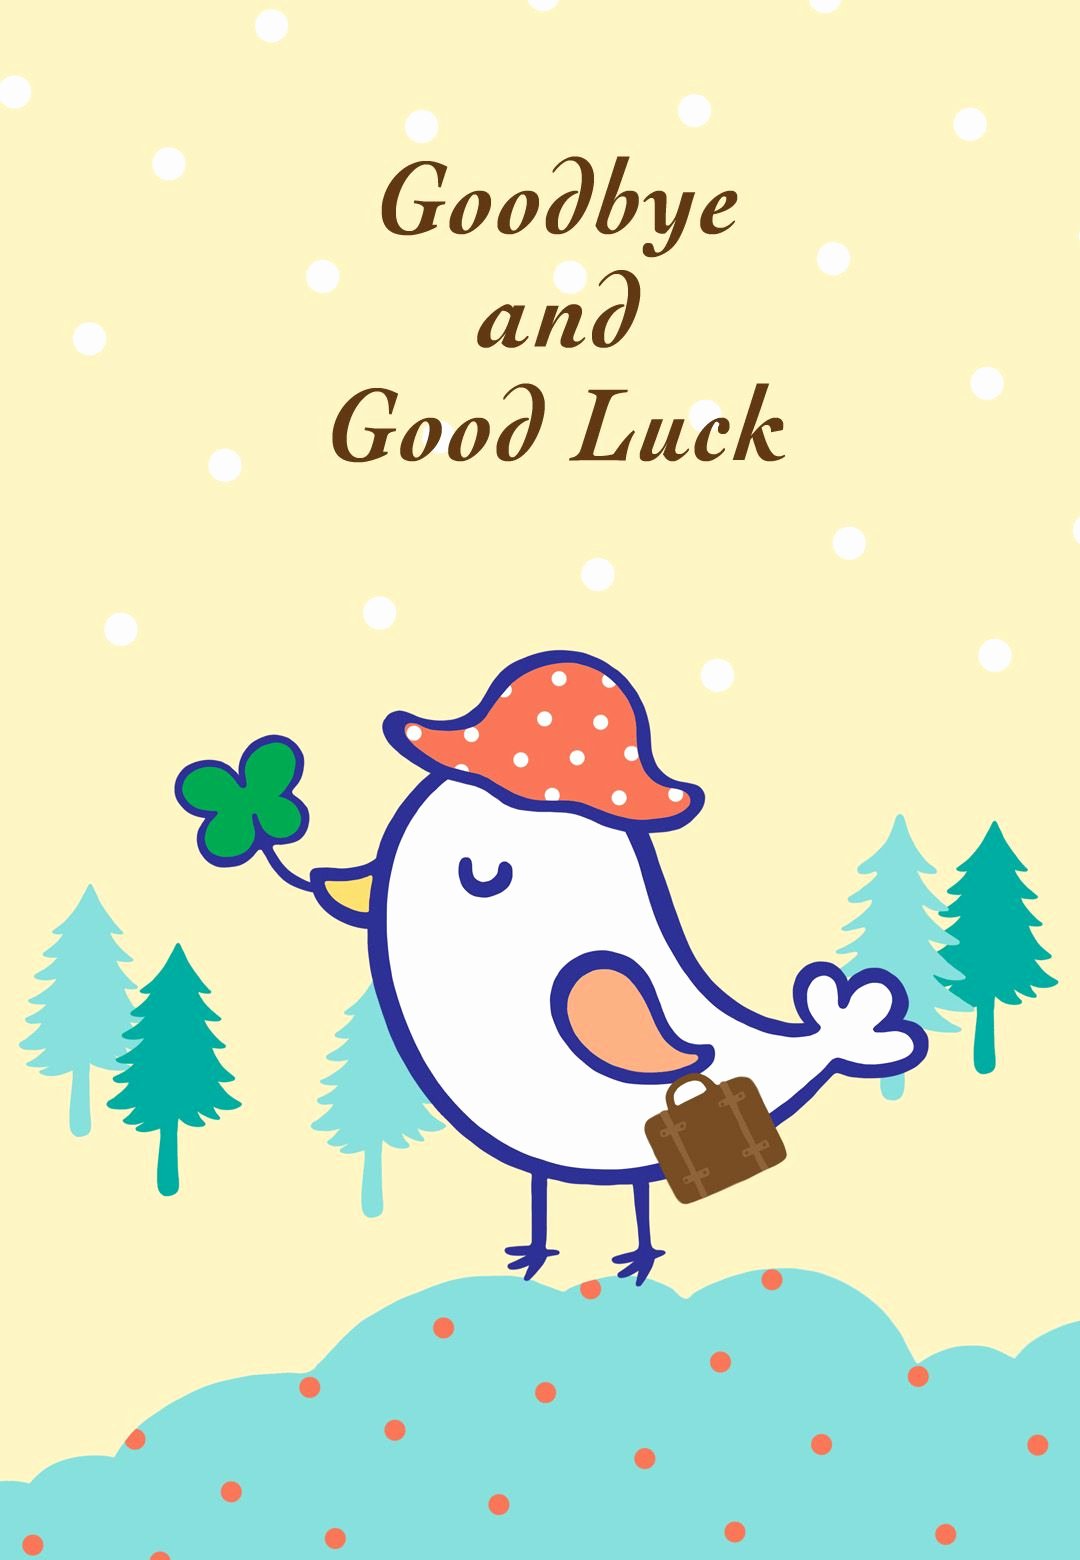 Free Printable Goodbye and Good Luck Greeting Card